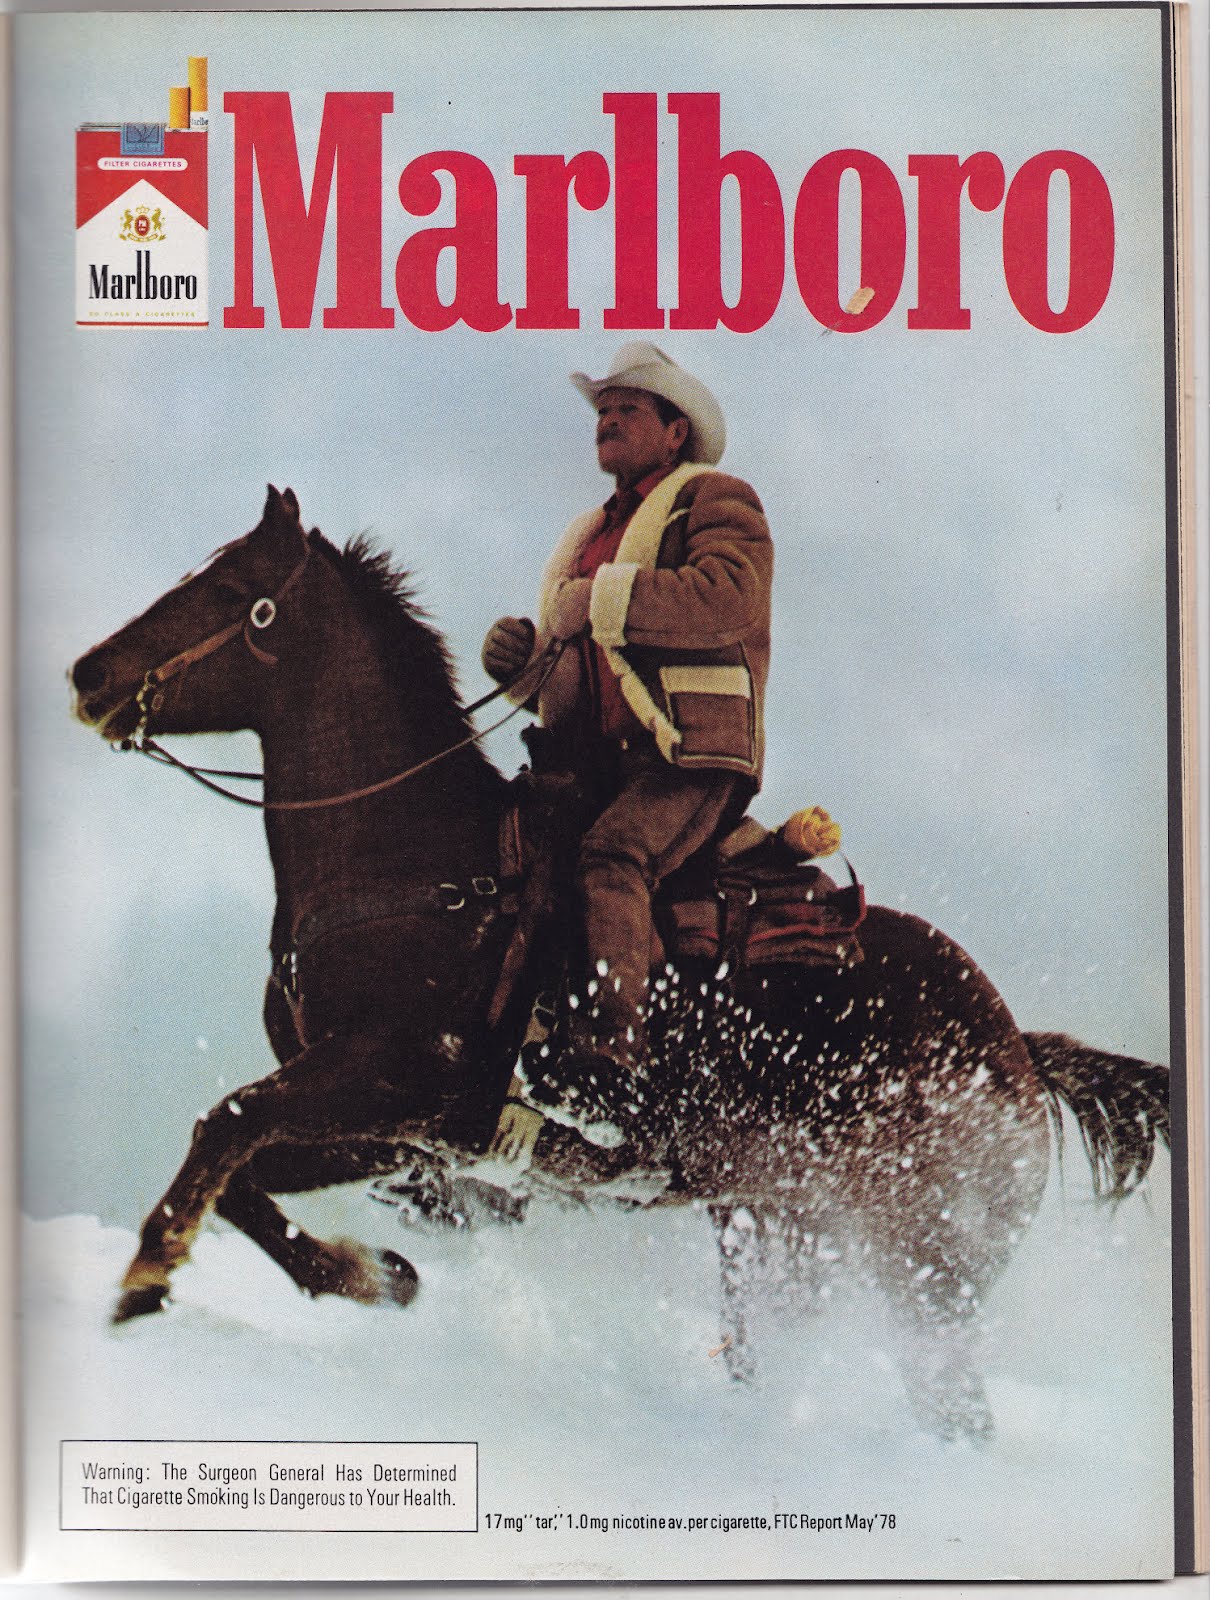 history of the marlboro man